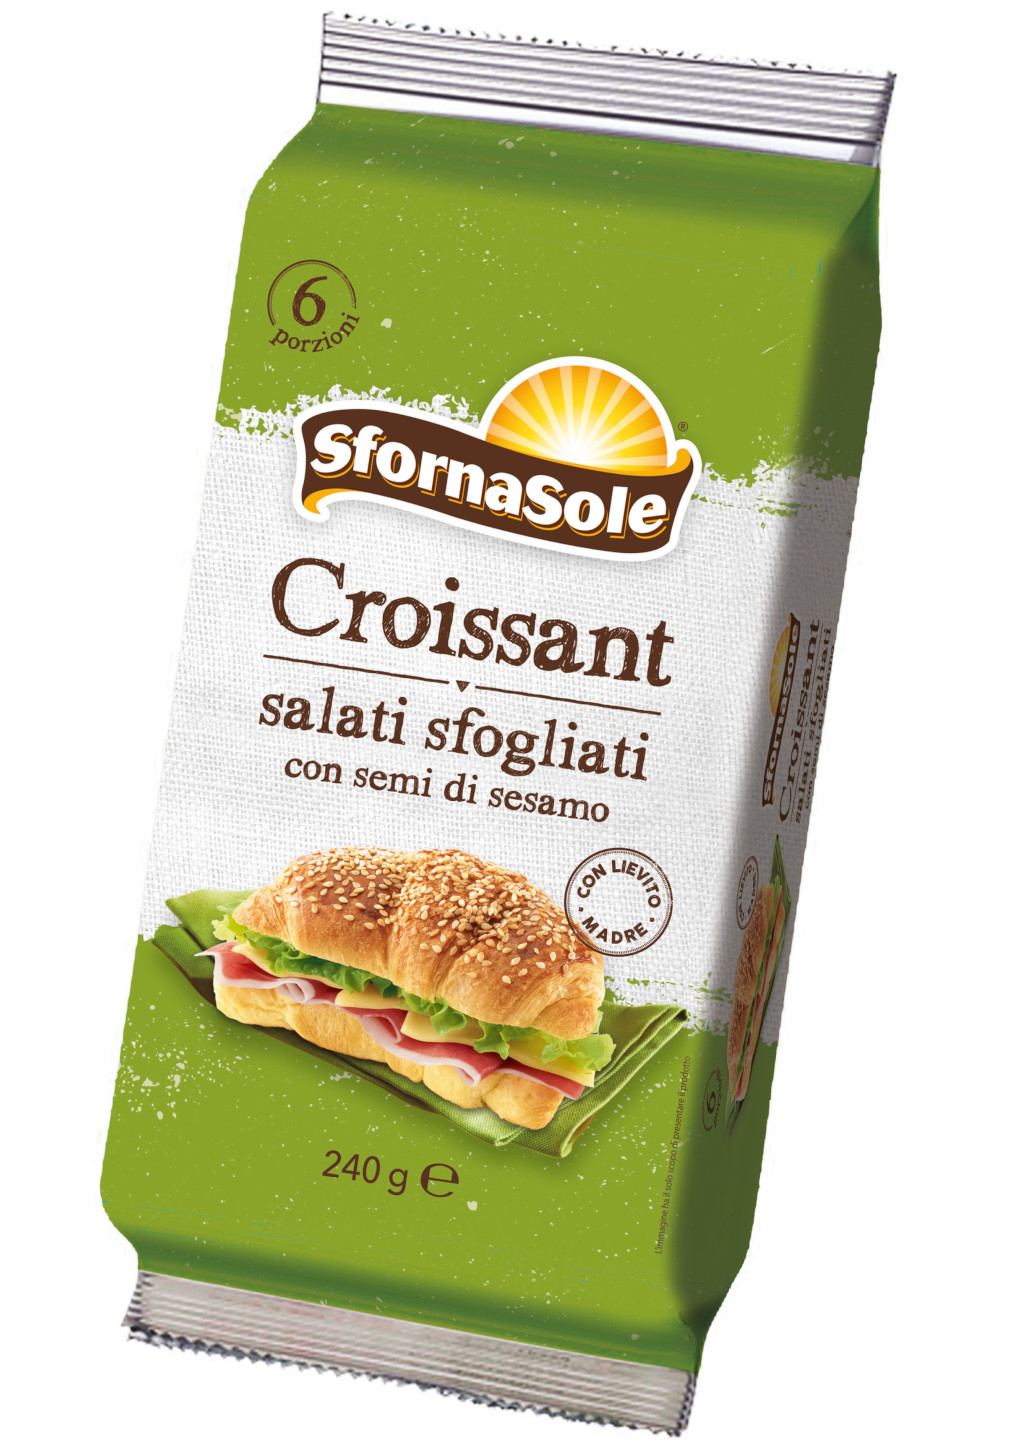 SFORNASOLE - Croissant salati sfogliati con semi di sesamo 240 g